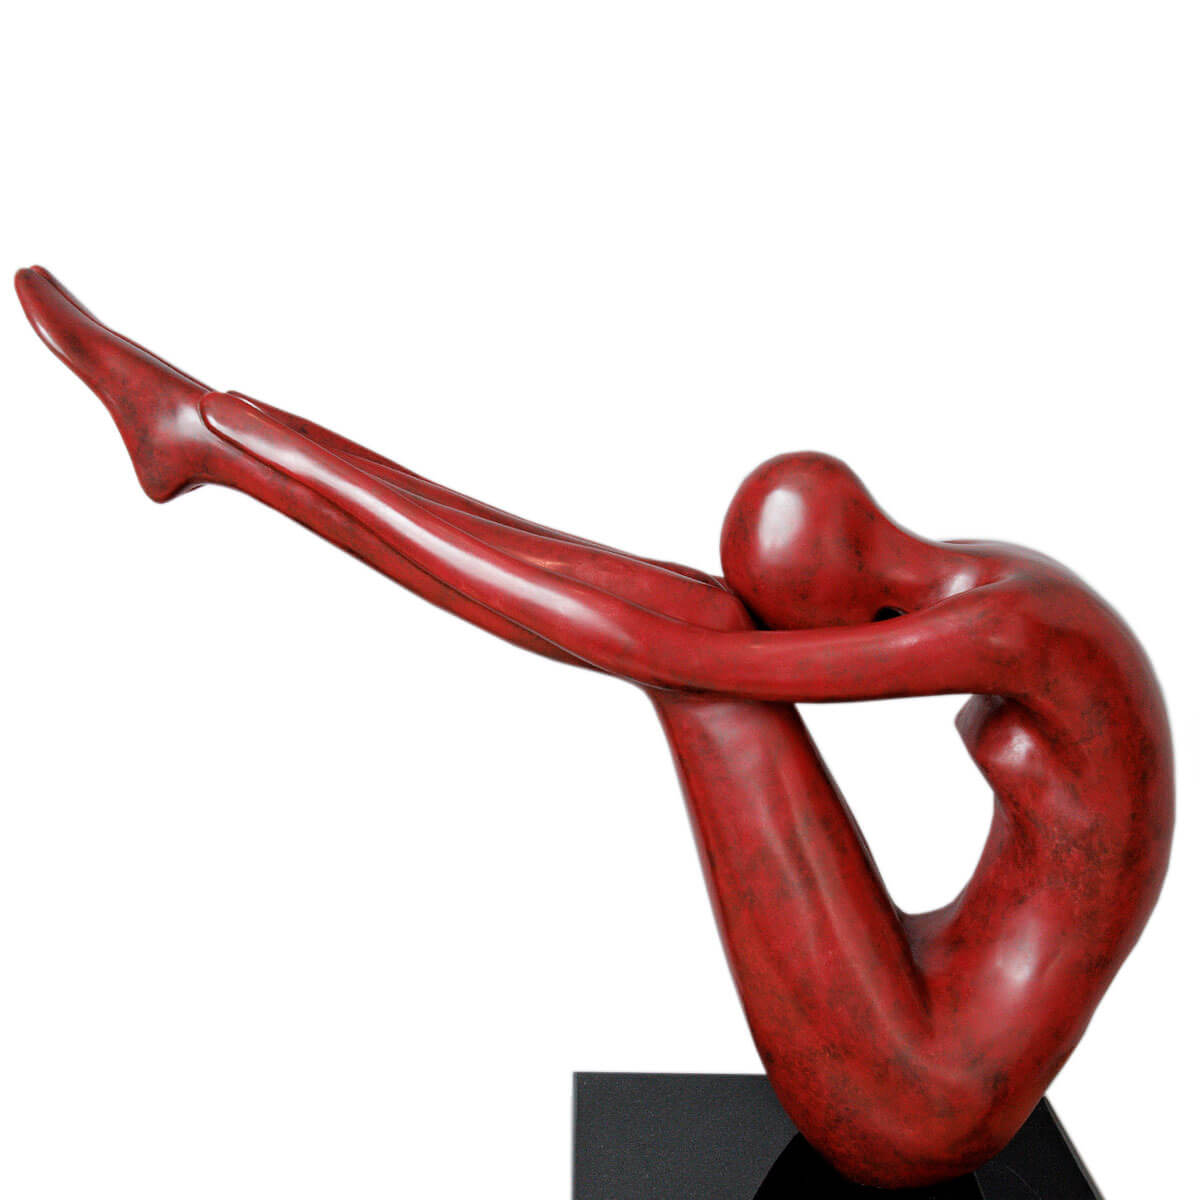 Robert-Helle-Sculpture-Gallery-Balance-RED-1-1200x1200